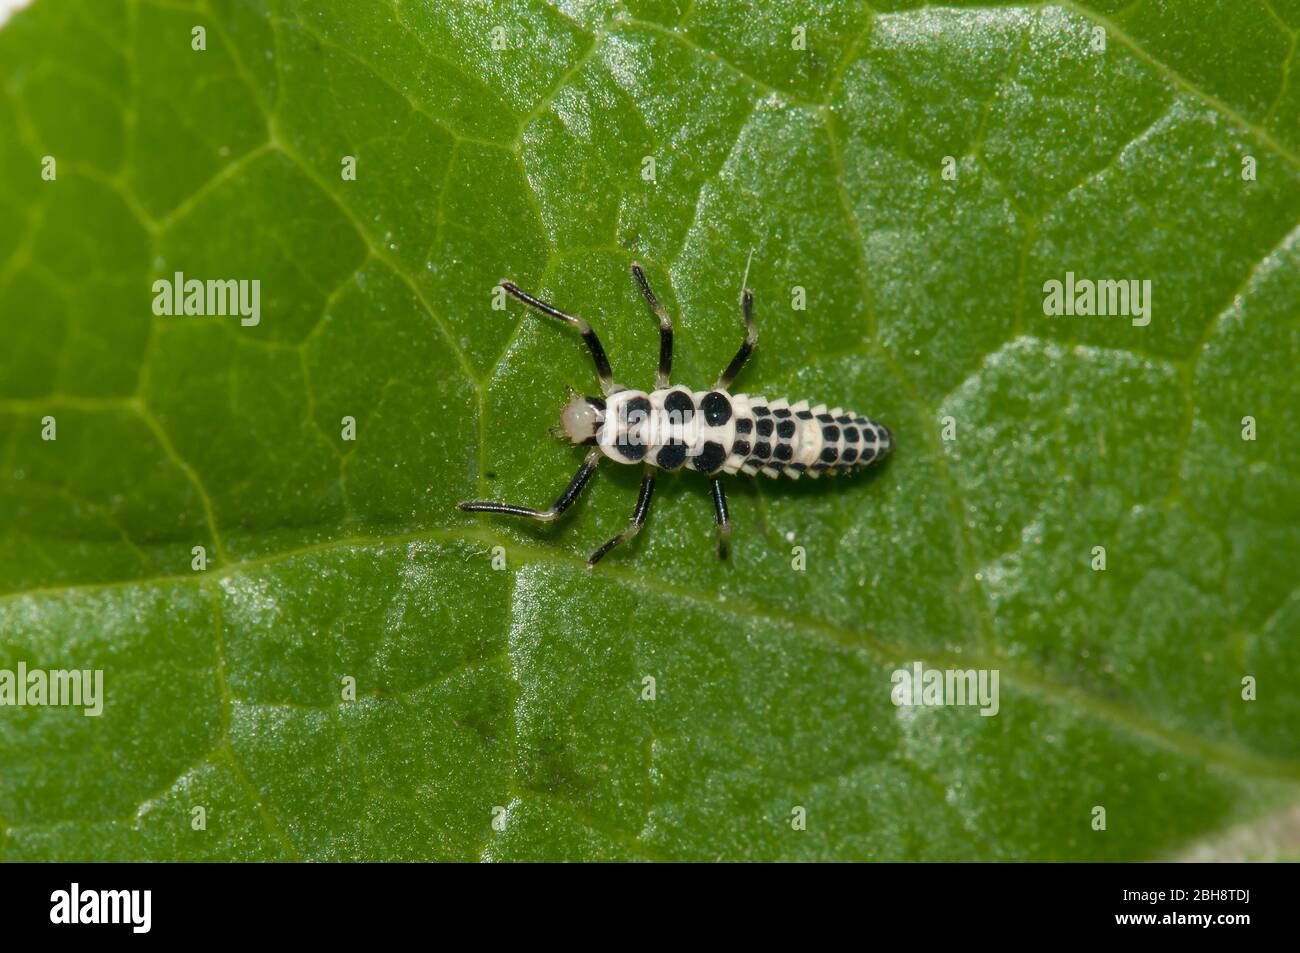 Larva from the Light Ladybug, Calvia decemguttata, sitting on leaf, Bavaria, Germany Stock Photo